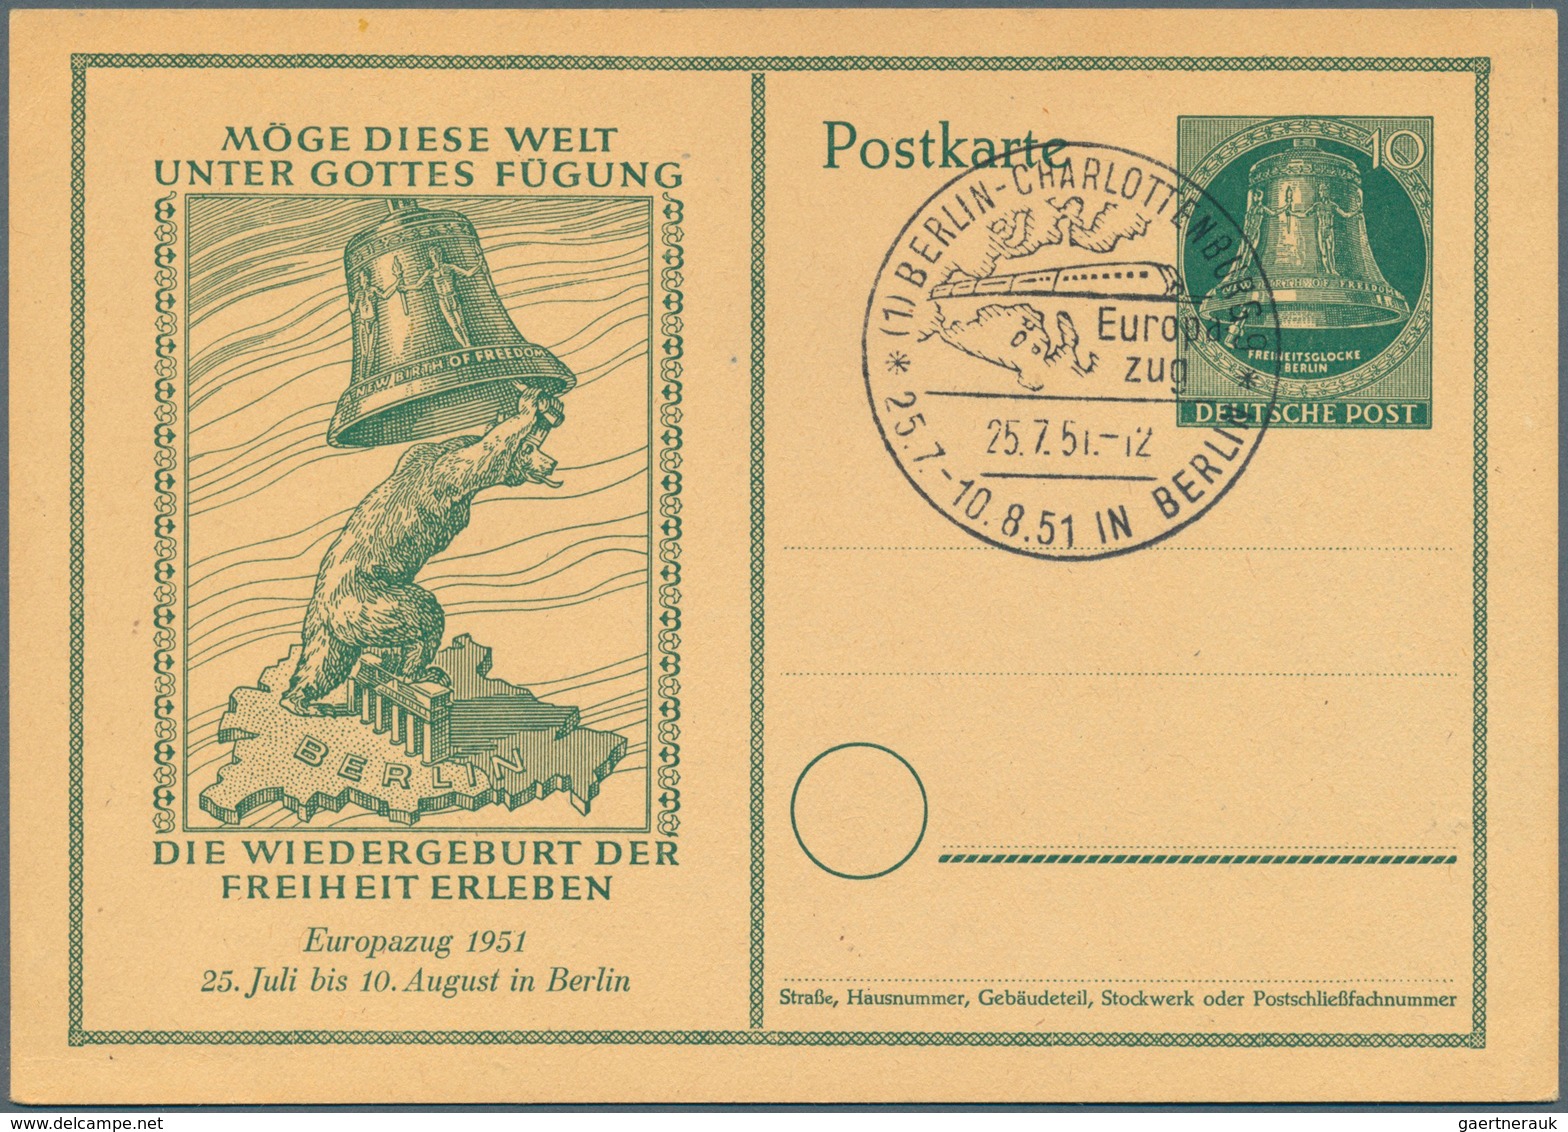 32546 Berlin - Ganzsachen: 1948/1956. Sammlung von 33 Postkarten und LP-Faltbriefen. Überwiegend ungebrauc